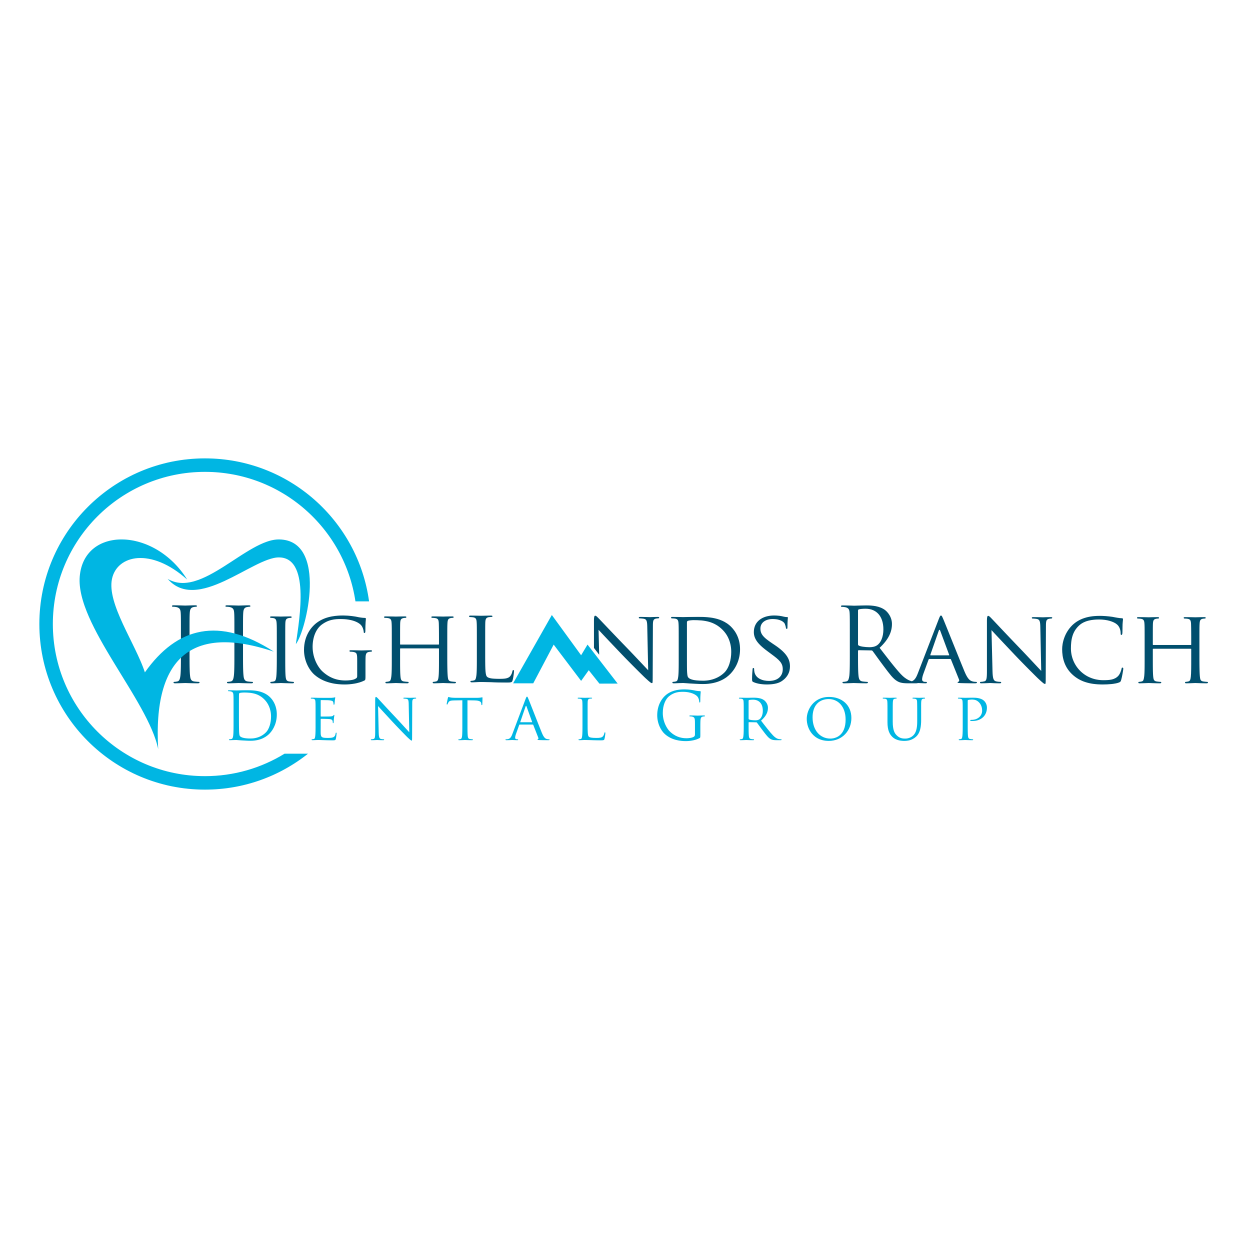 Business logo of Highlands Ranch Dental Group